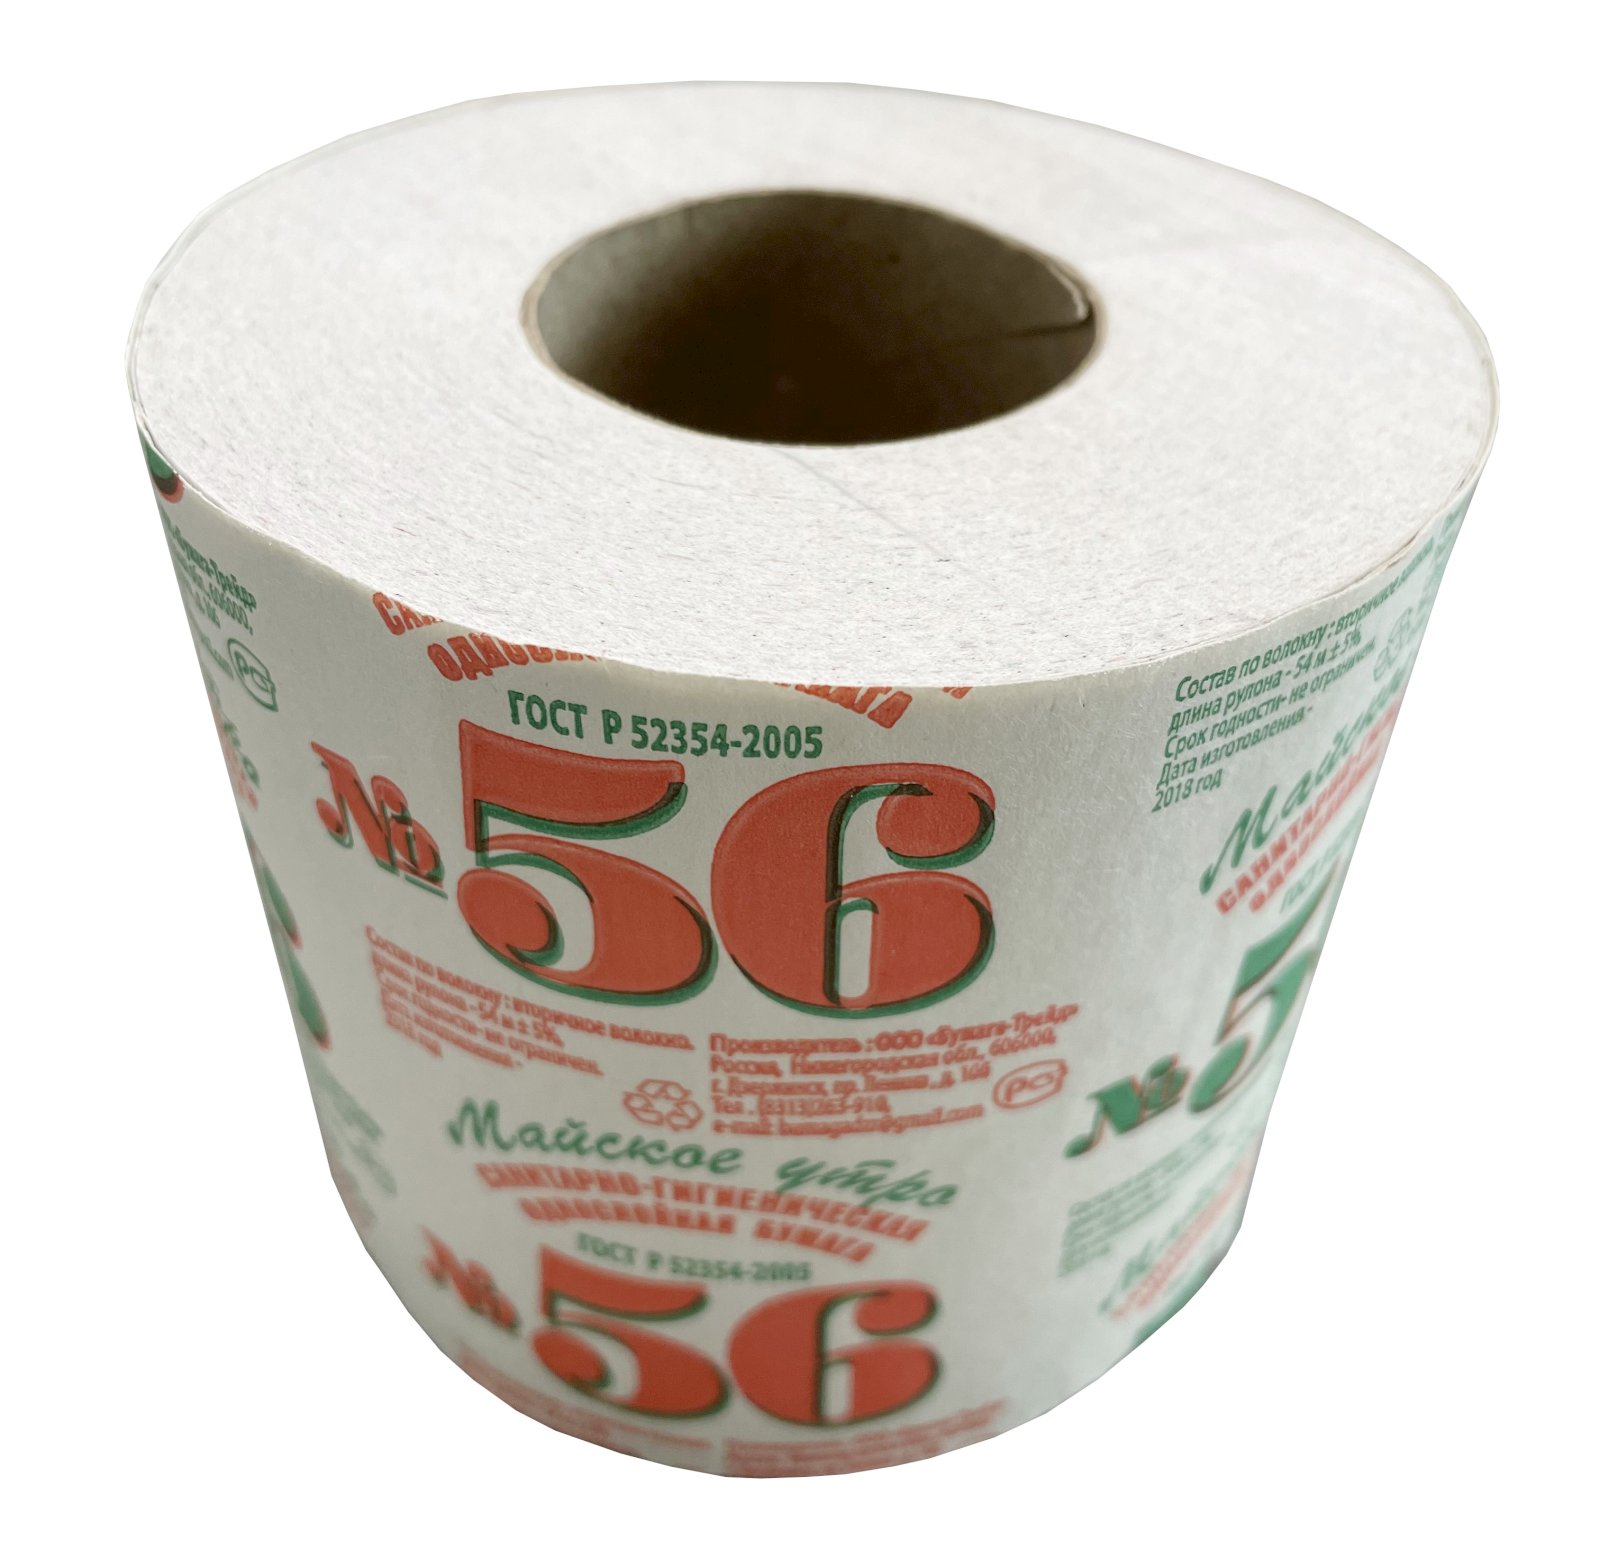 Туалетная бумага Майское утро №56 выполнена из переработанного сырья. Однослойная, белая, оснащена втулкой для размещения в диспенсере или держателе для туалетной бумаги. Имеет перфорацию для удобного отделения листа от рулона. Длина намотки 54 метра. Производство Россия.